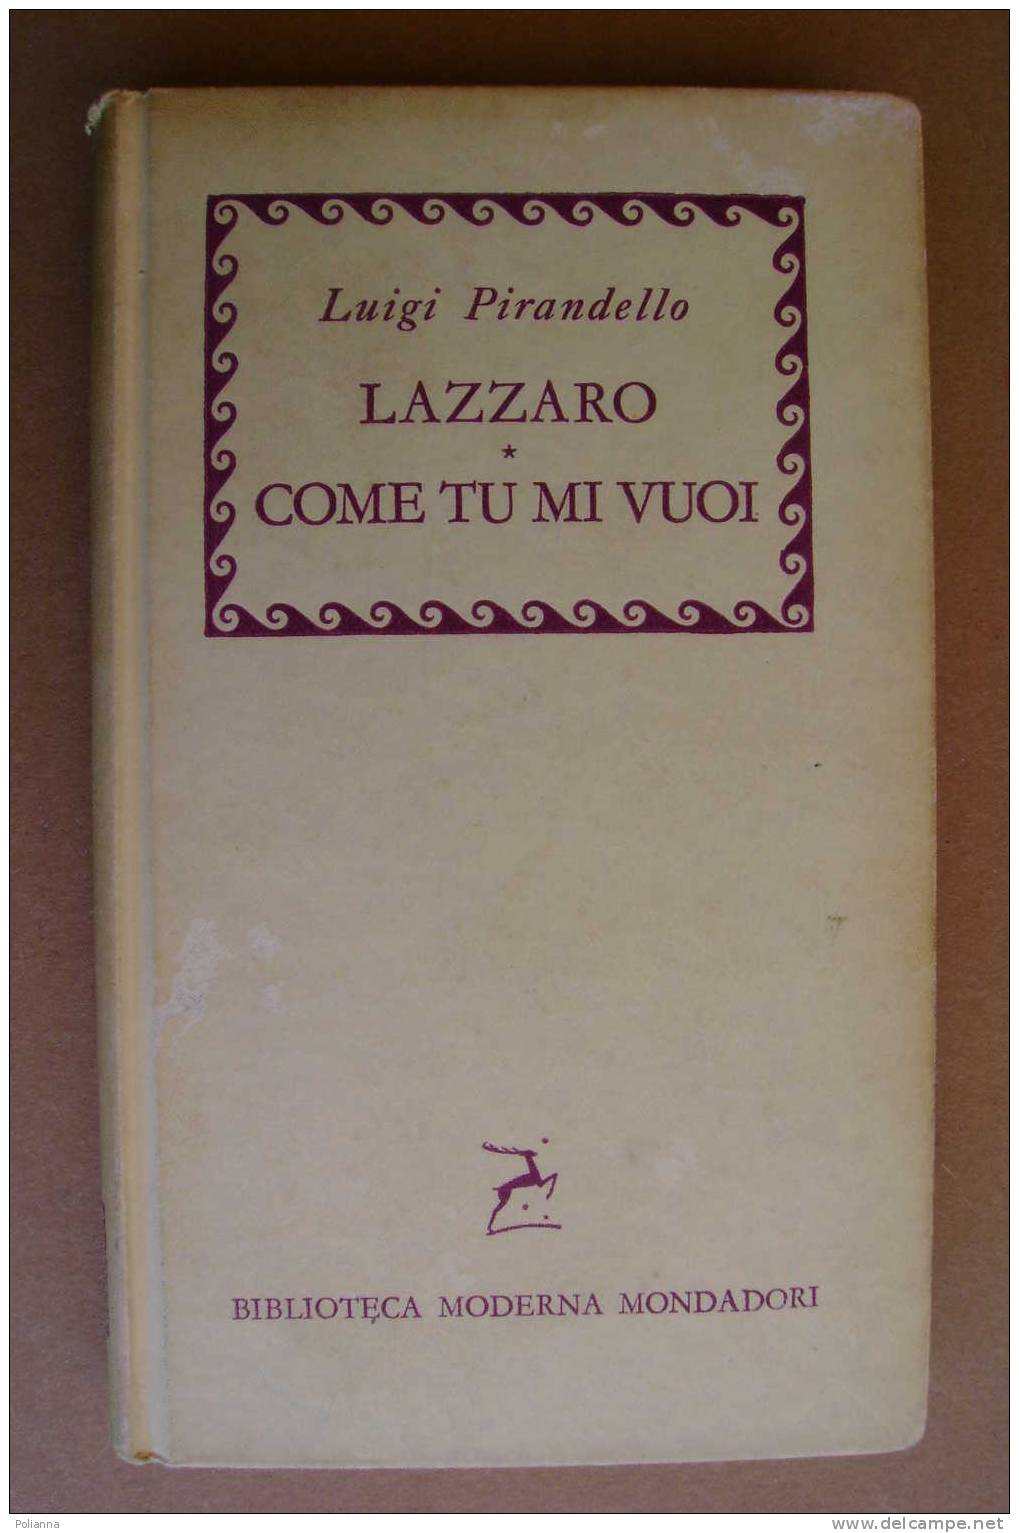 PAL/36 Luigi Pirandello LAZZARO COME TU MI VUOI Biblioteca Monderna Mondadori 1957/ Teatro - Novelle, Racconti